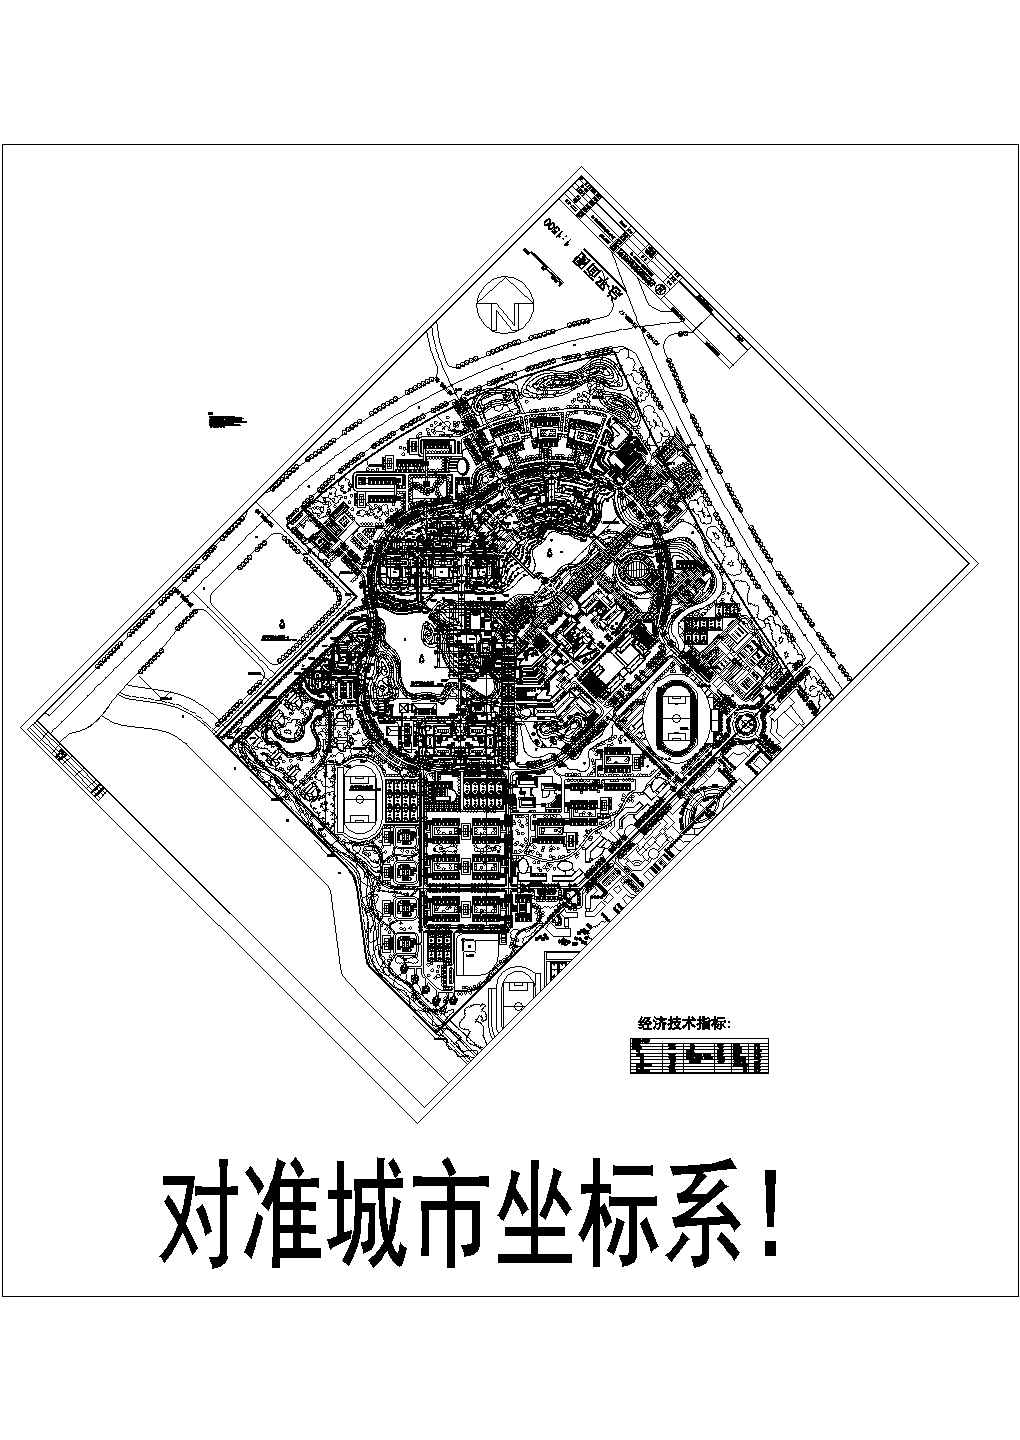 上海水产大学临港校区校园规划设计图